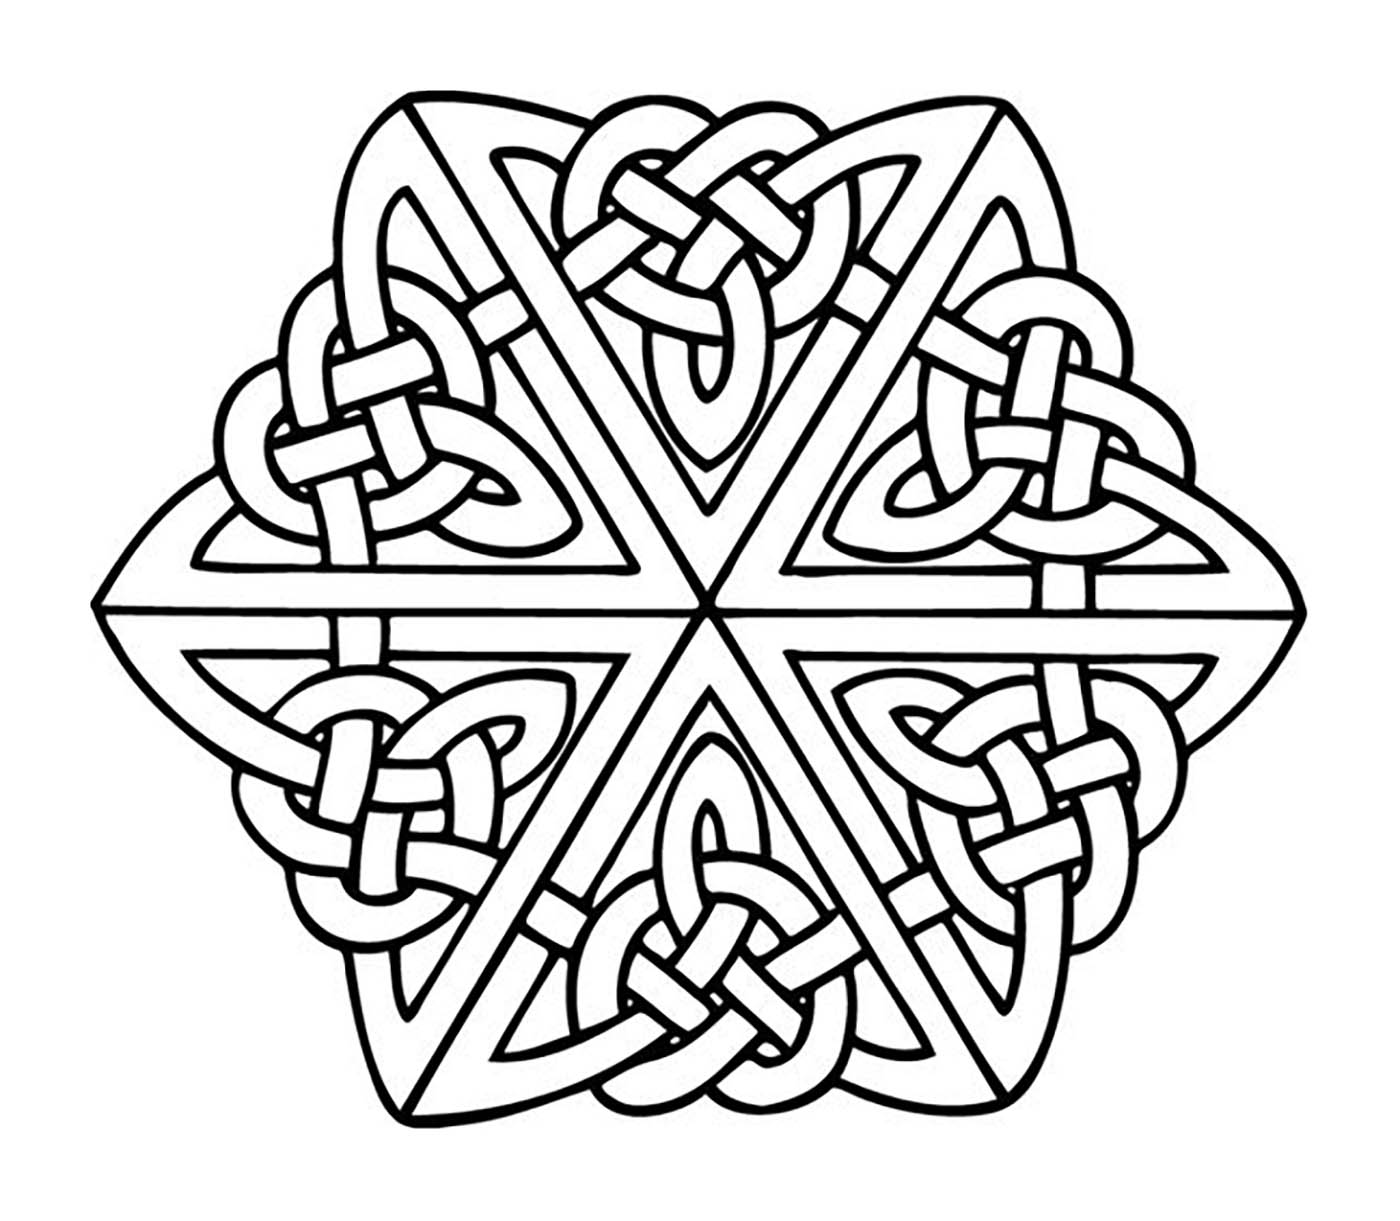 Se state cercando un mandala celtico non troppo complicato da colorare, ma con un relativo livello di difficoltà, questo è perfetto per voi.